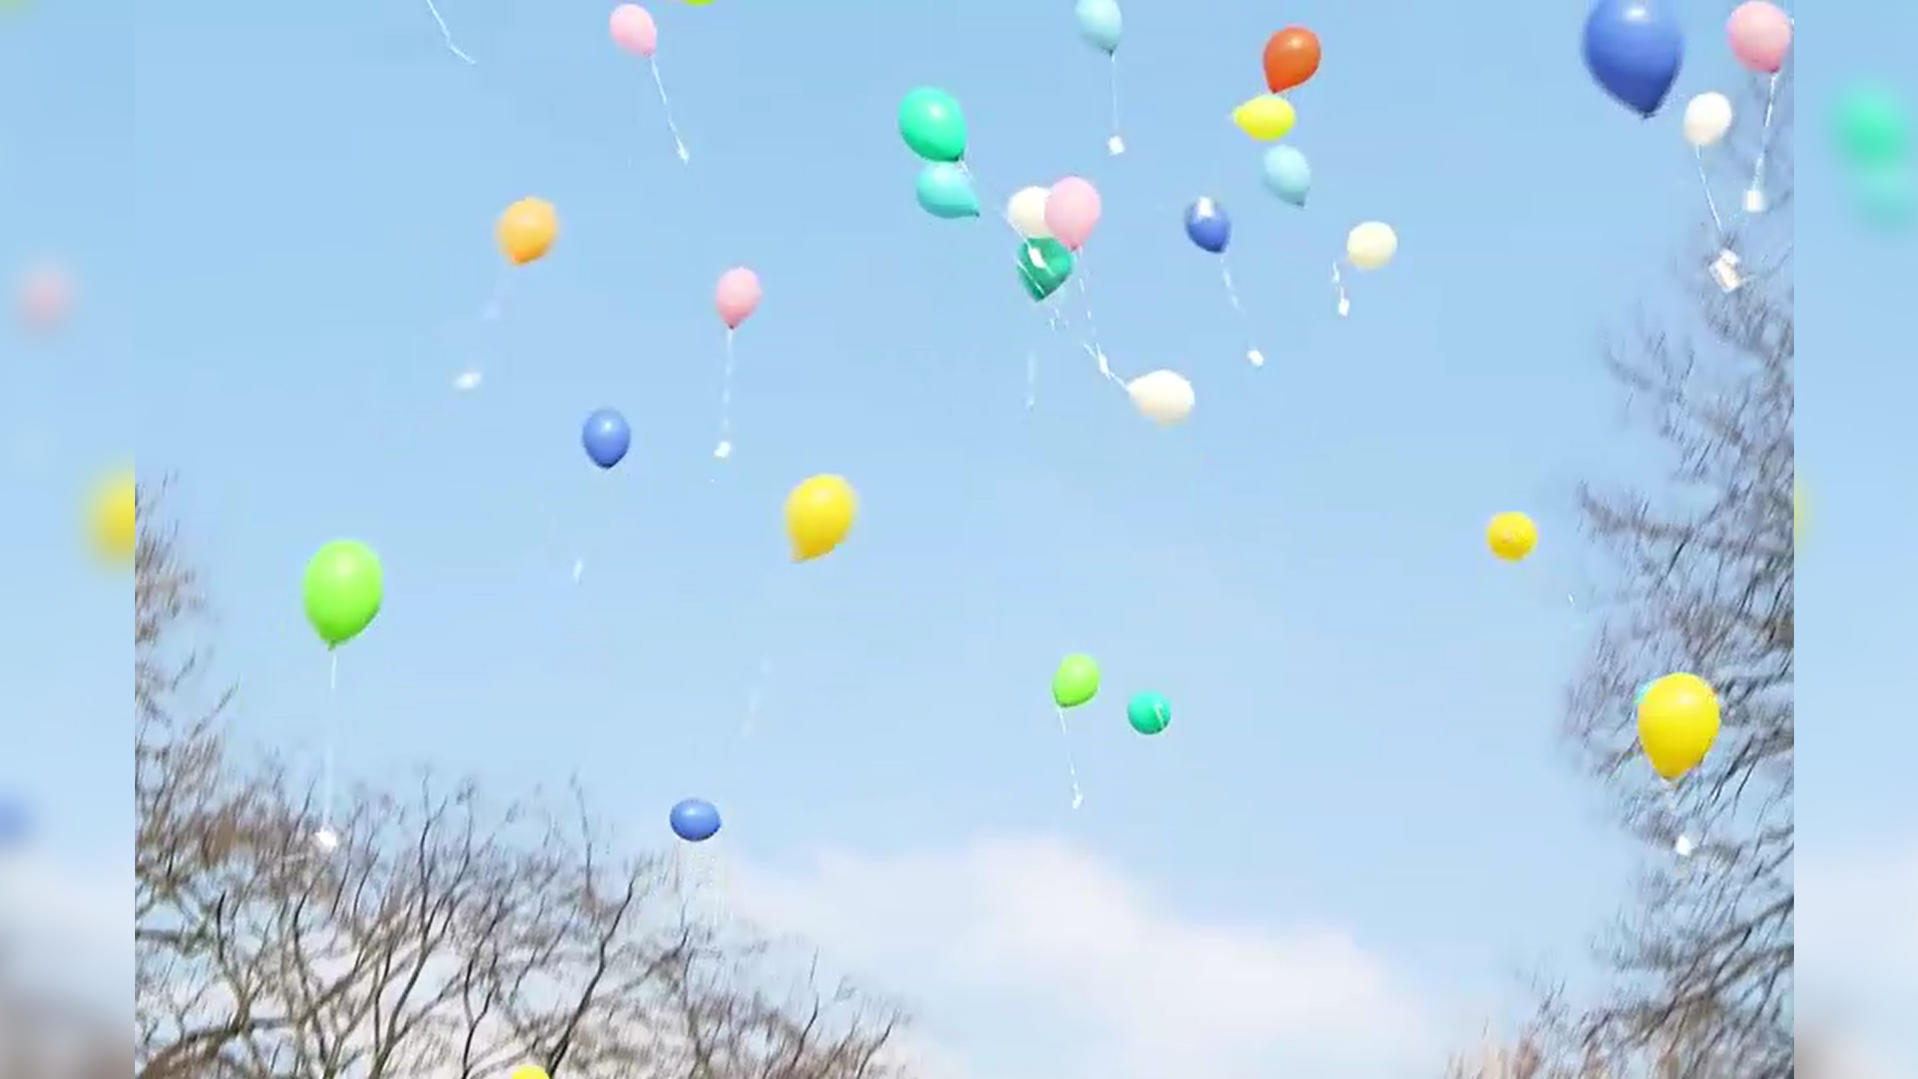 Nach dem Trauergottesdienst für Tim Lobinger lassen seine Liebsten bunte Luftballons in den Himmel steigen.